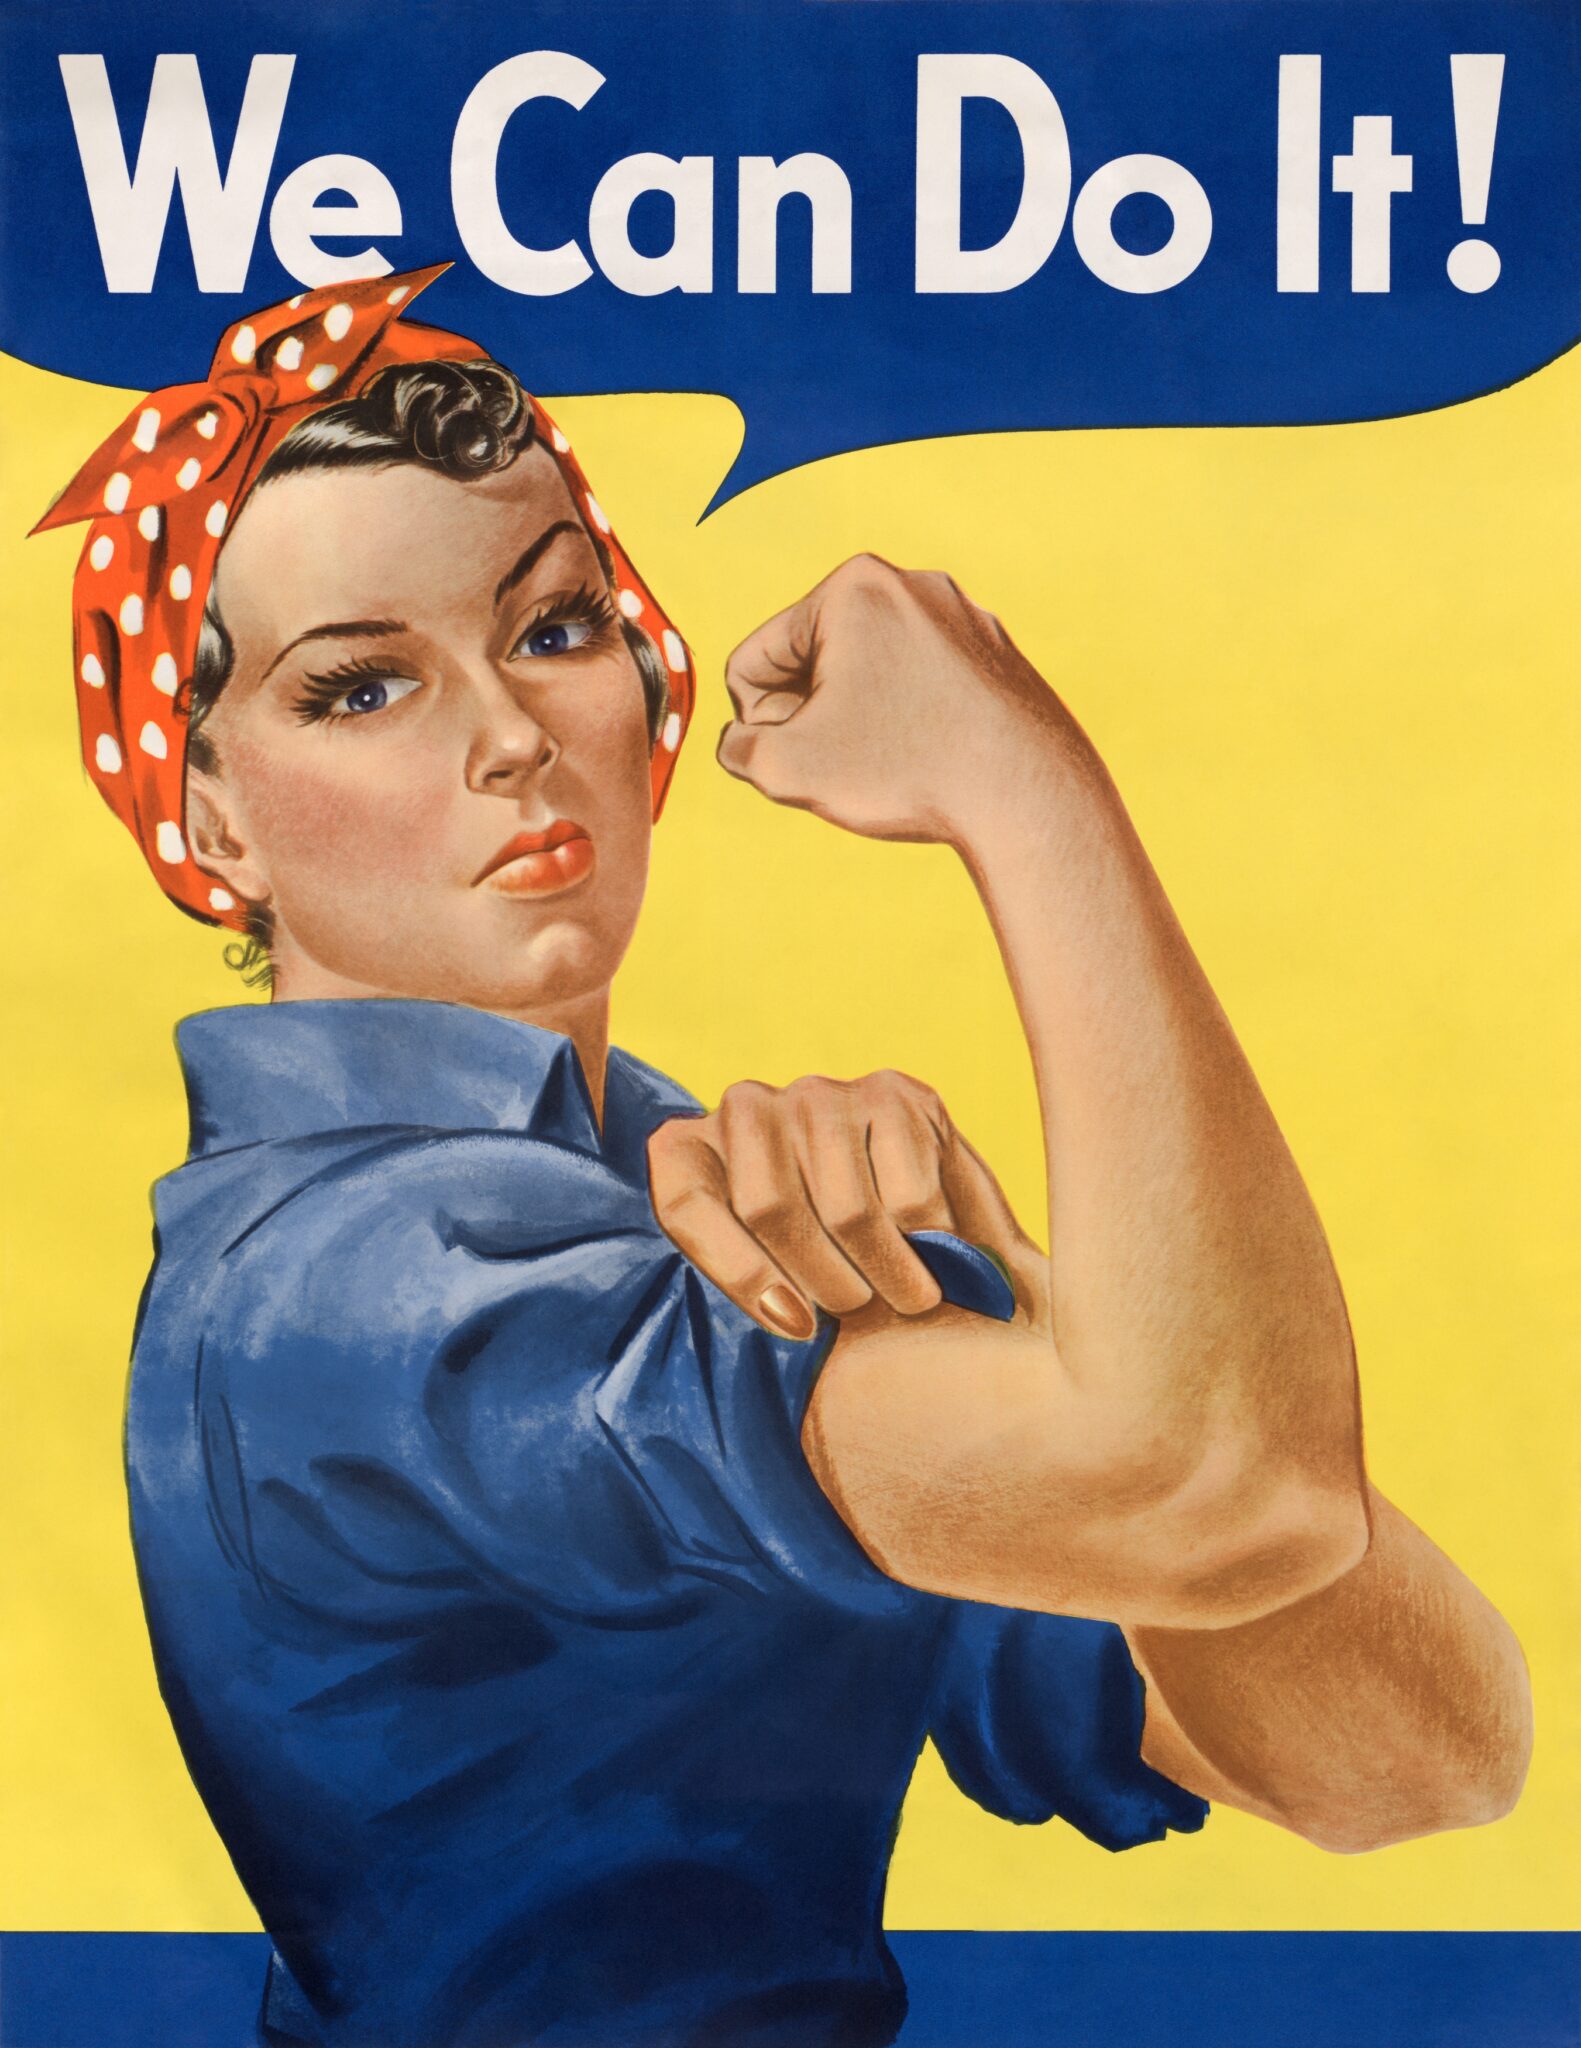 "Â¡Podemos hacerlo!", tambiÃ©n llamado "Rosie la remachadora" en honor a la figura icÃ³nica de una fuerte trabajadora de producciÃ³n de guerra (1942-1945), cartel litogrÃ¡fico de J. Howard Miller.